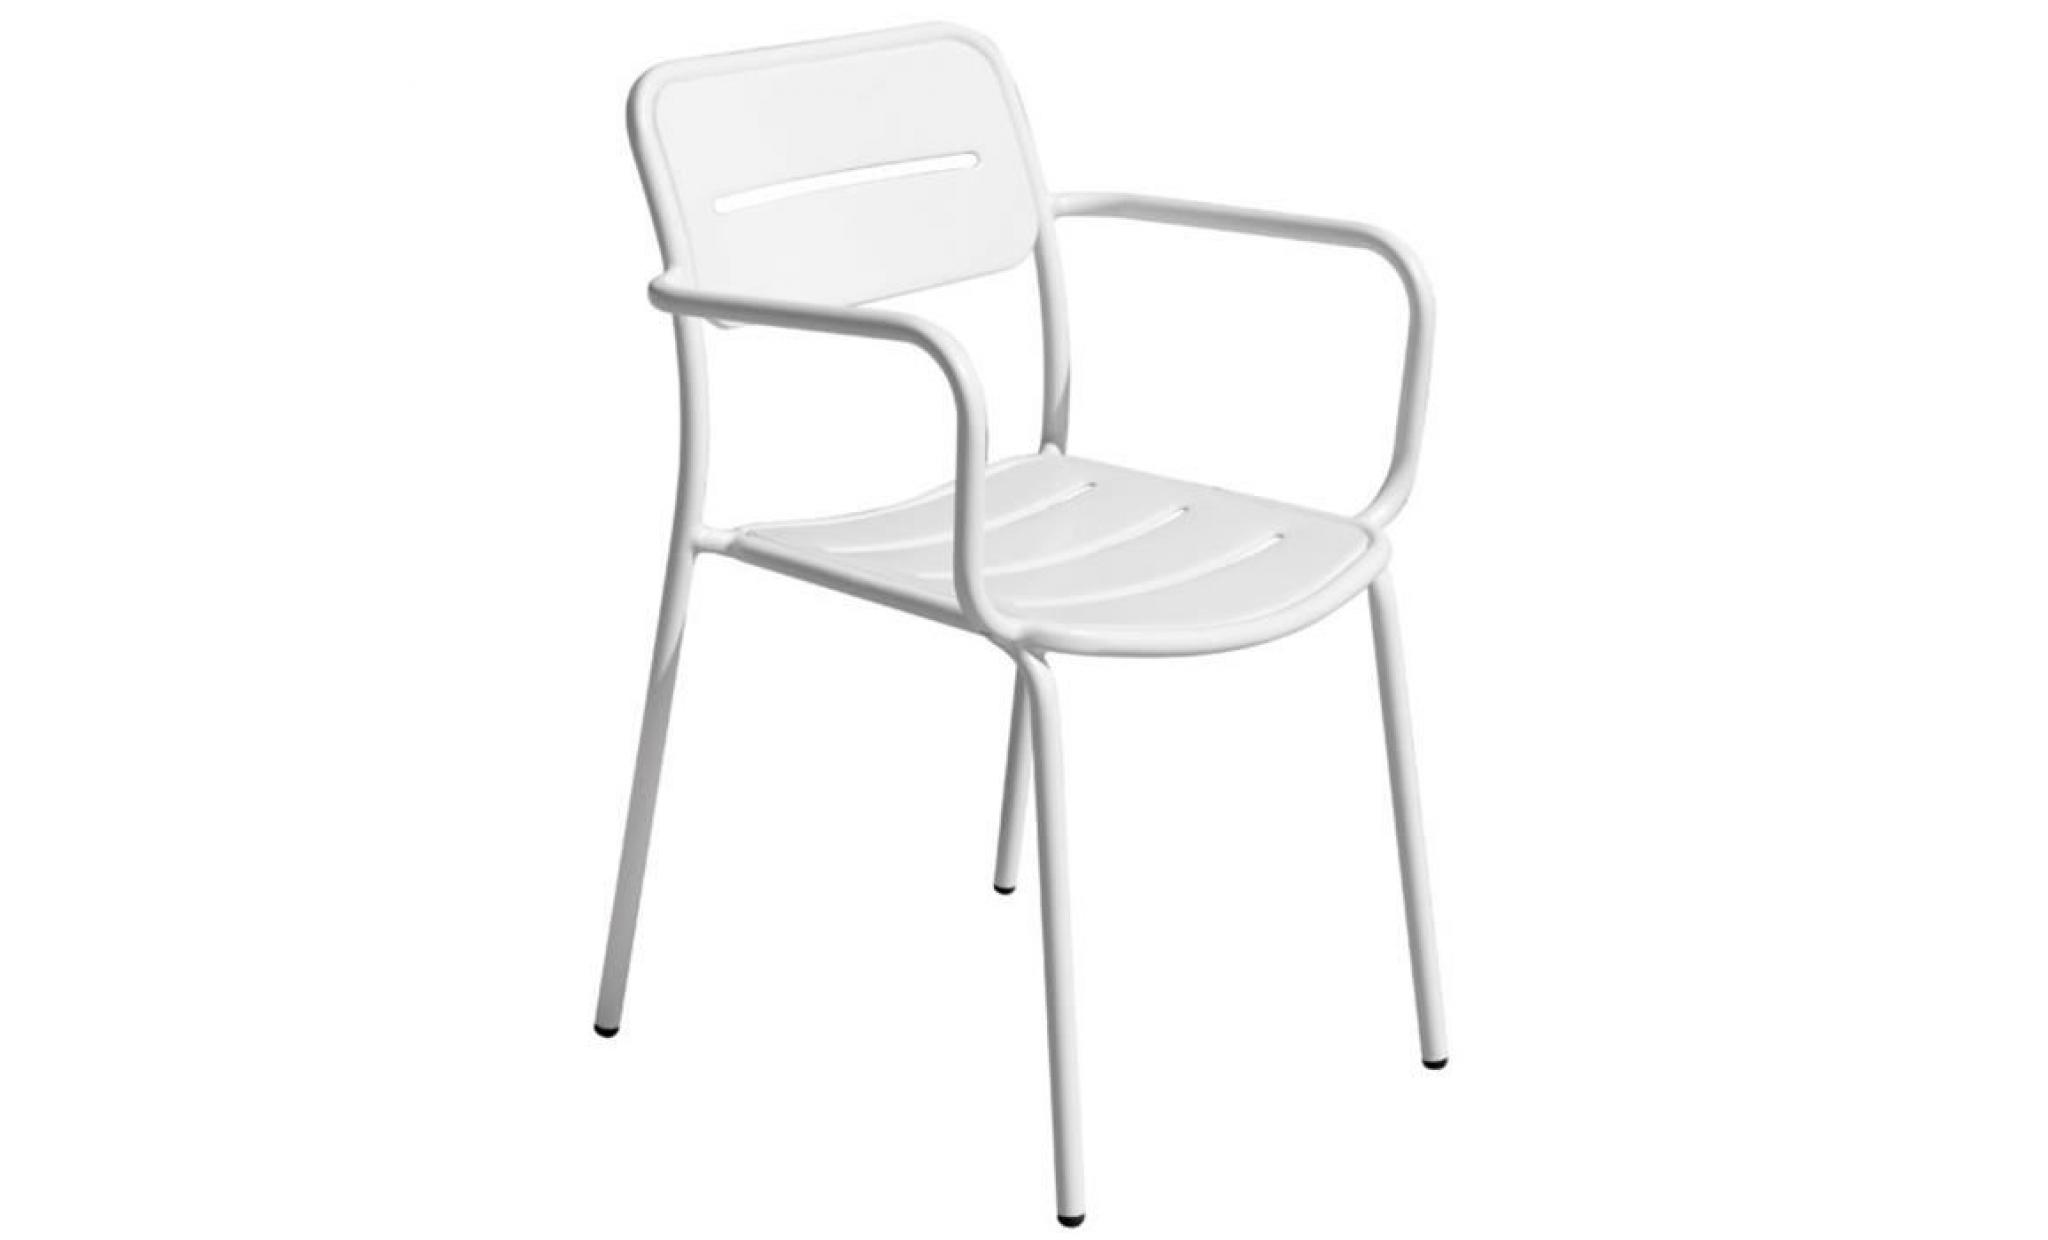 fauteuil empilable en fer coloris blanc sablé   dim : h.82 x l.57 x p.60 cm